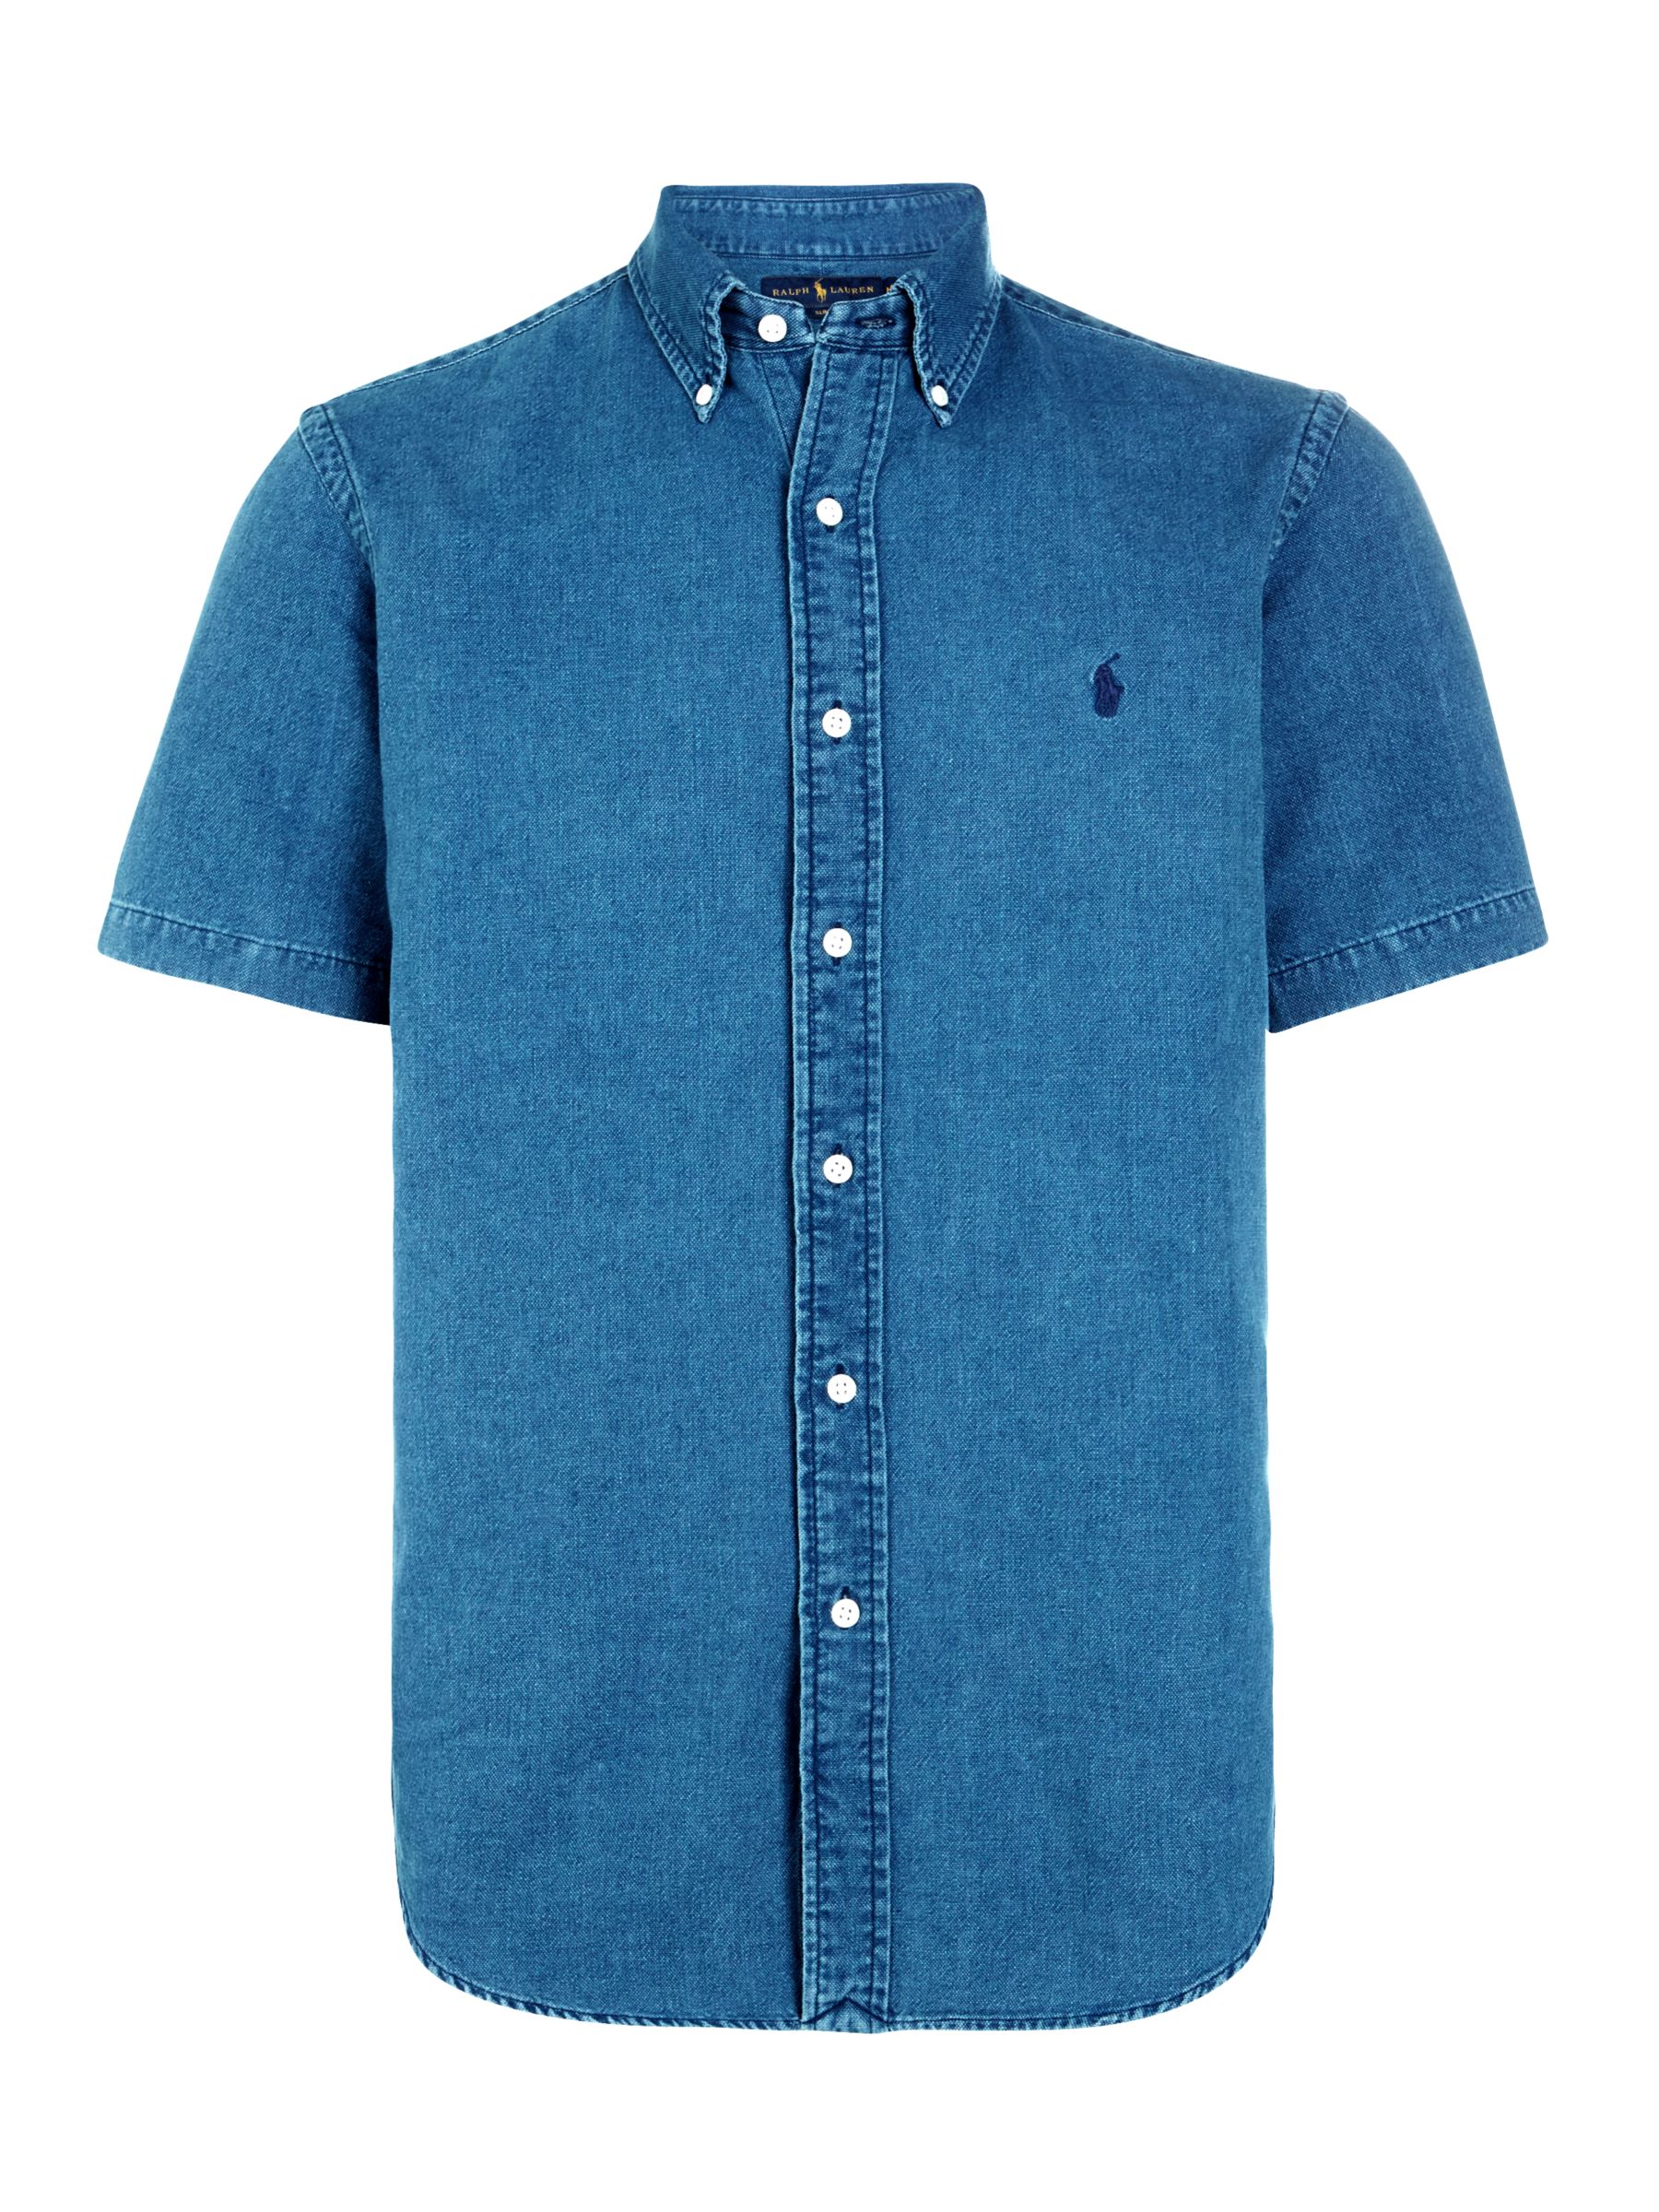 blue jean ralph lauren shirt